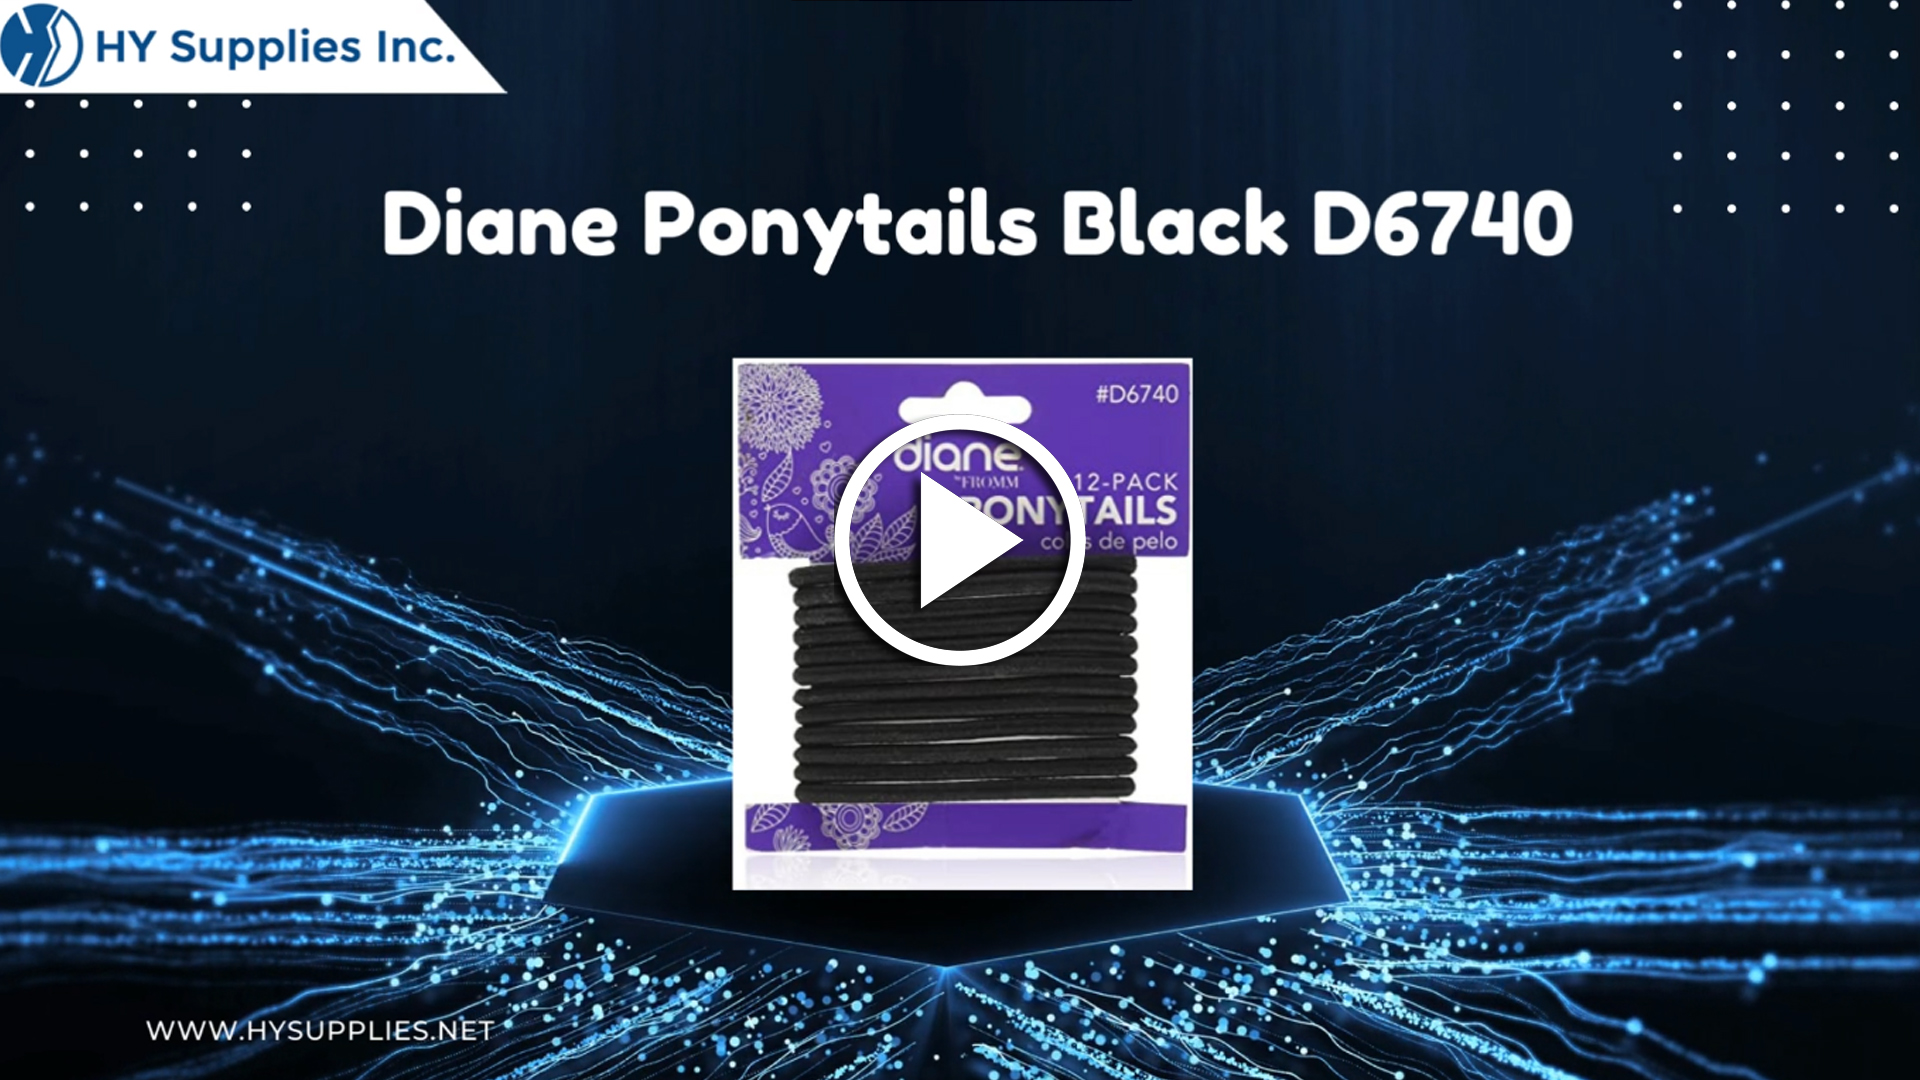 Diane Ponytails Black D6740